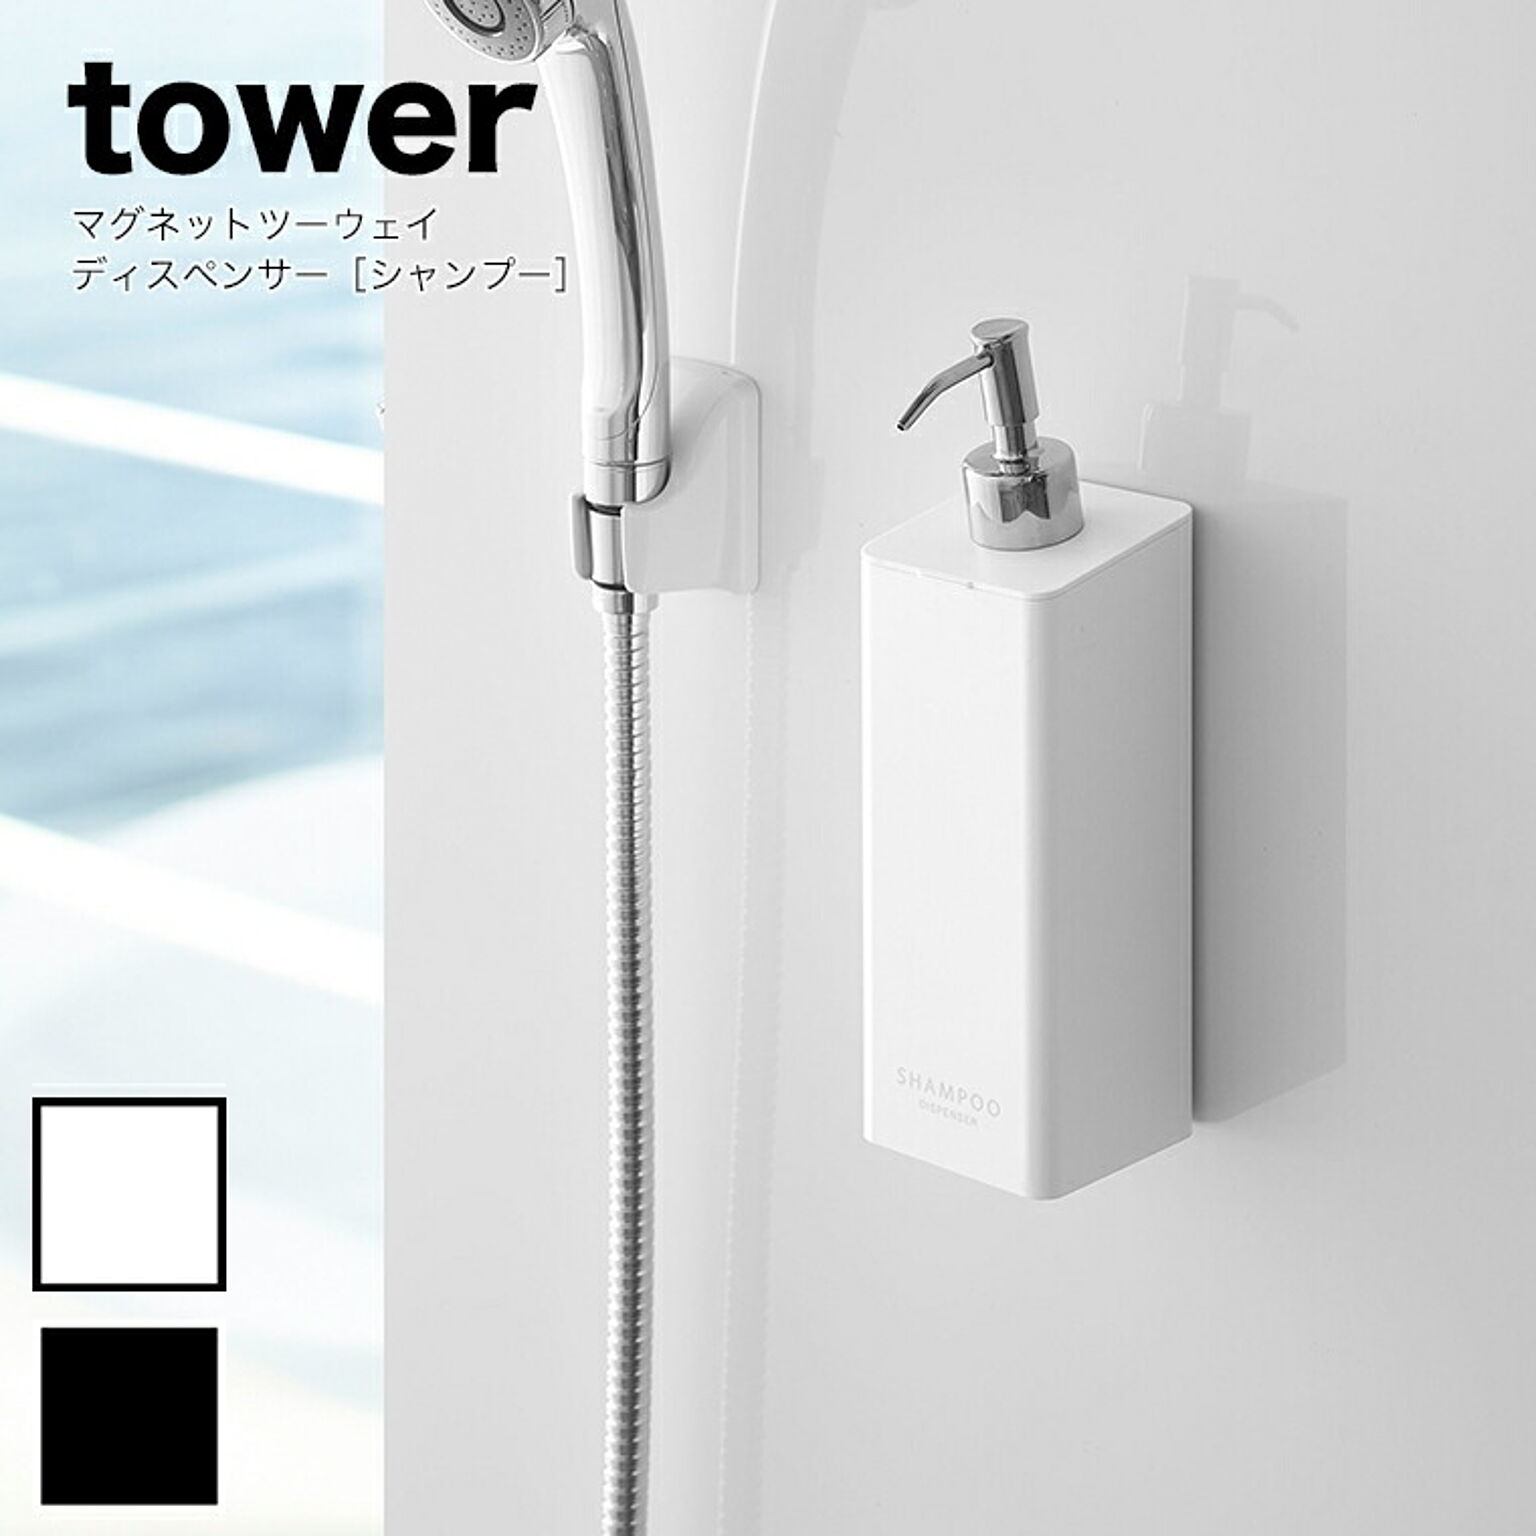 山崎実業 tower (タワー） マグネットツーウェイディスペンサー シャンプー 